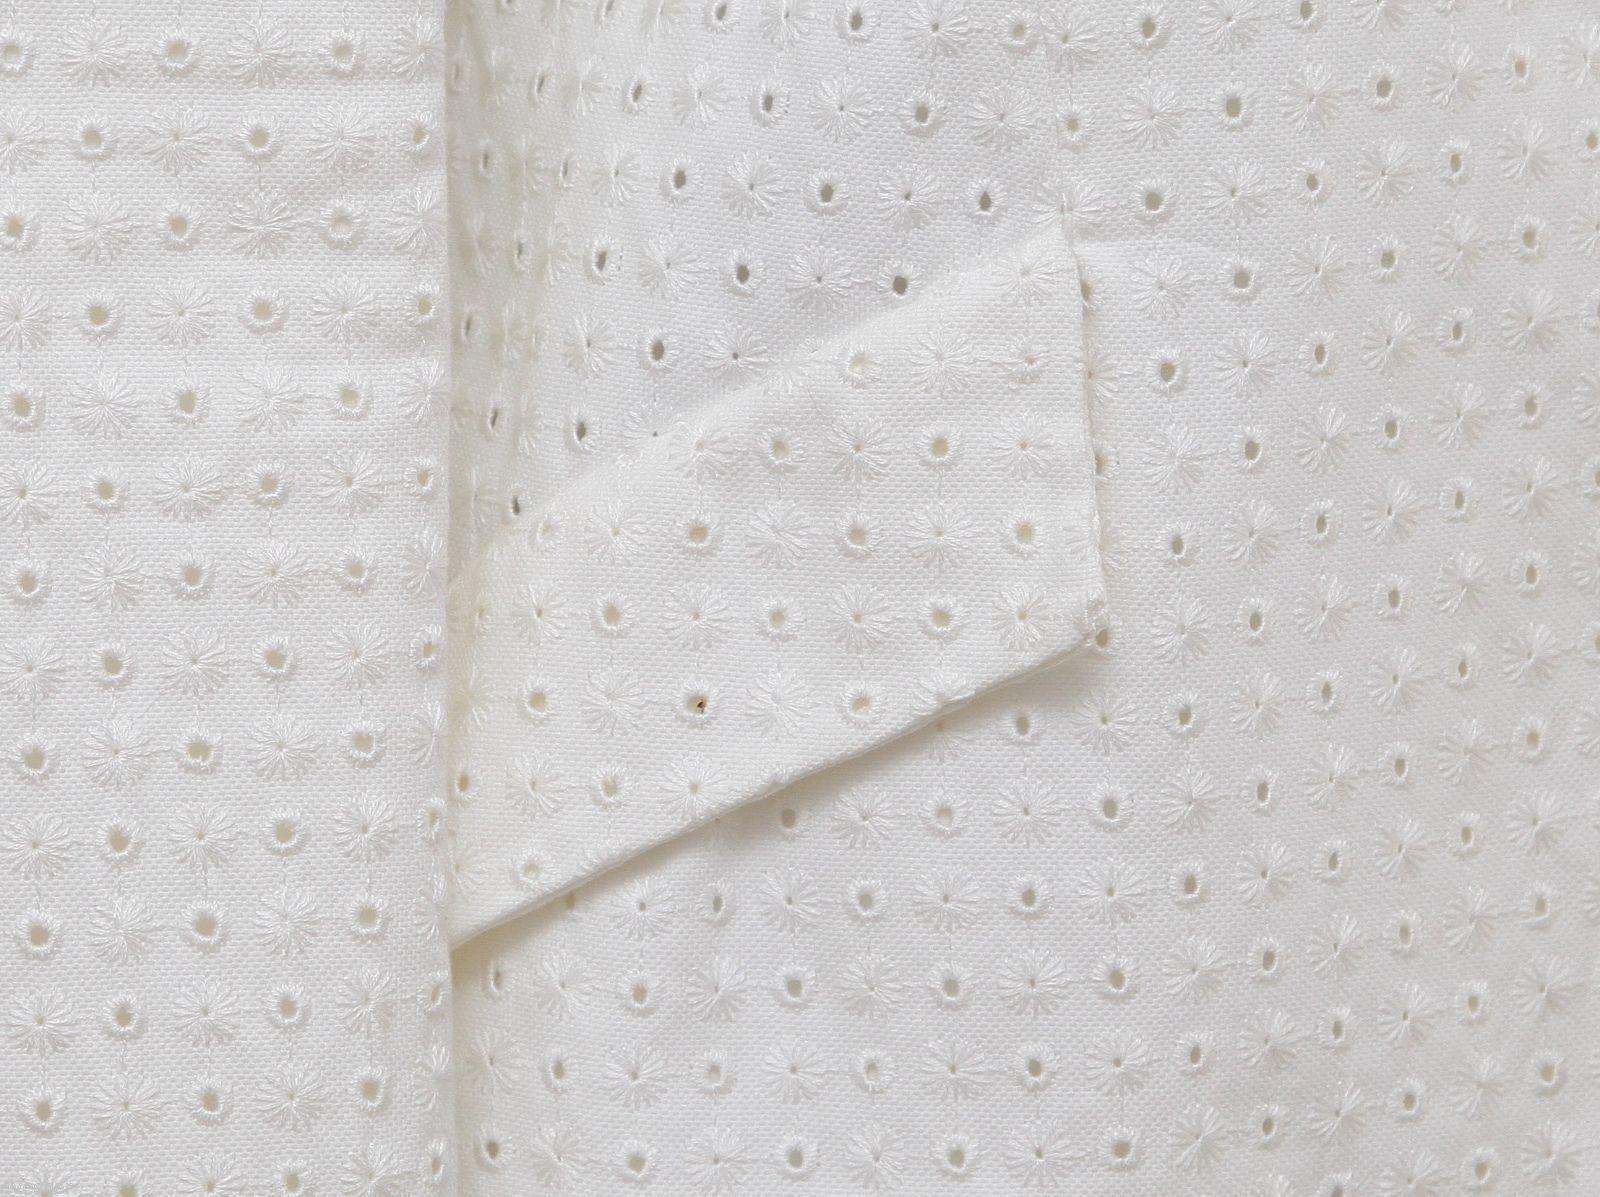 Valentino White Blazer Jacket Eyelet Cotton Viscose Long Sleeve Lined Sz 4 For Sale 2